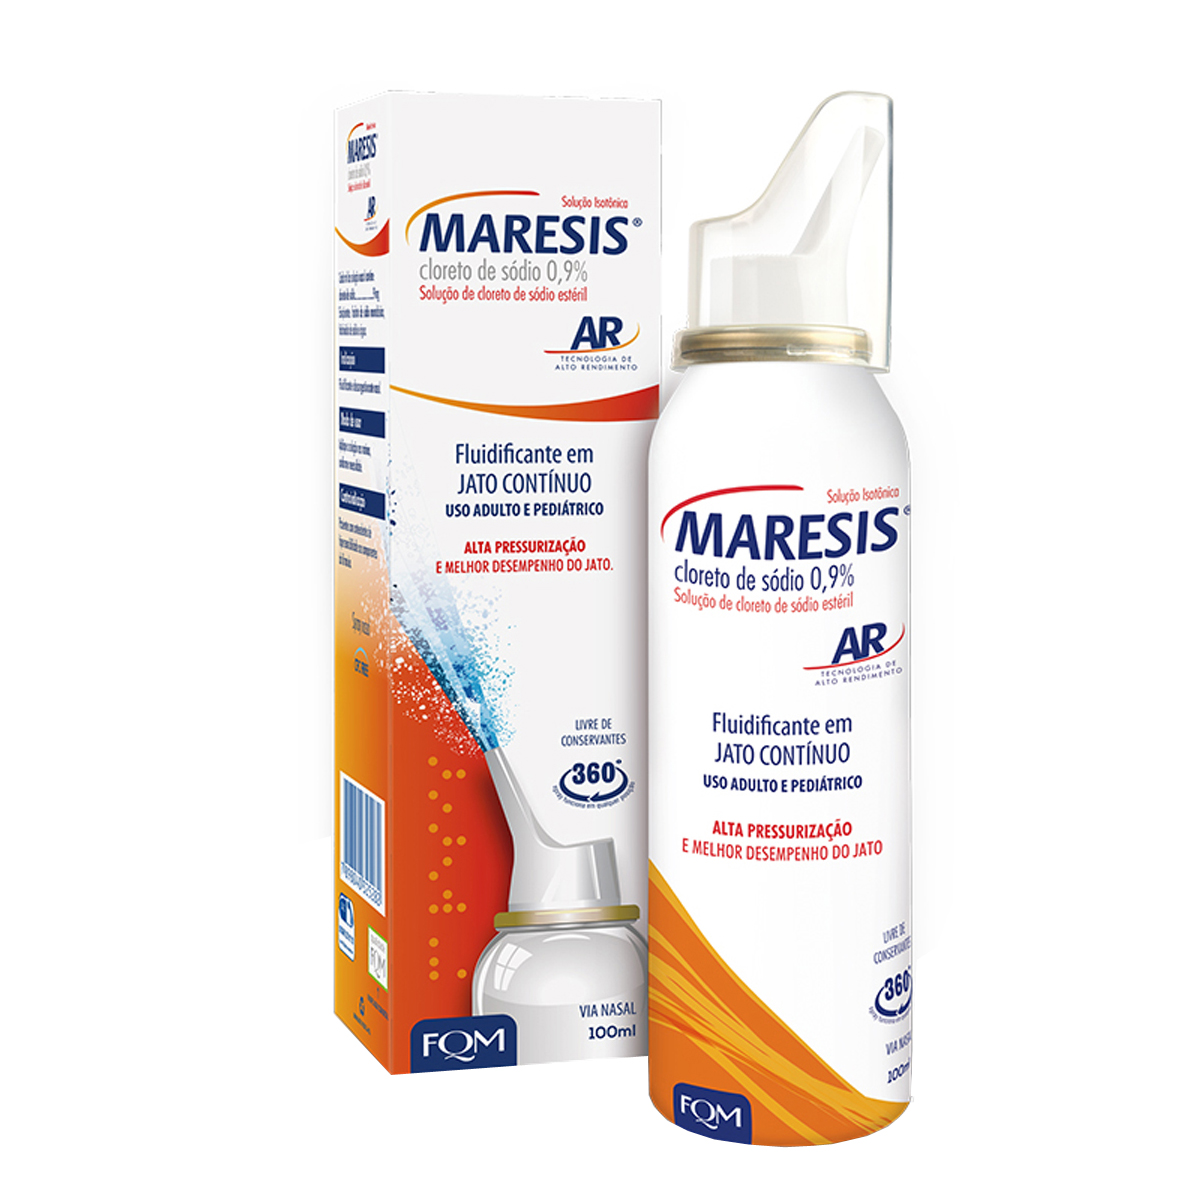 Maresis AR 0,9% Descongestionante Spray Nasal 100ml